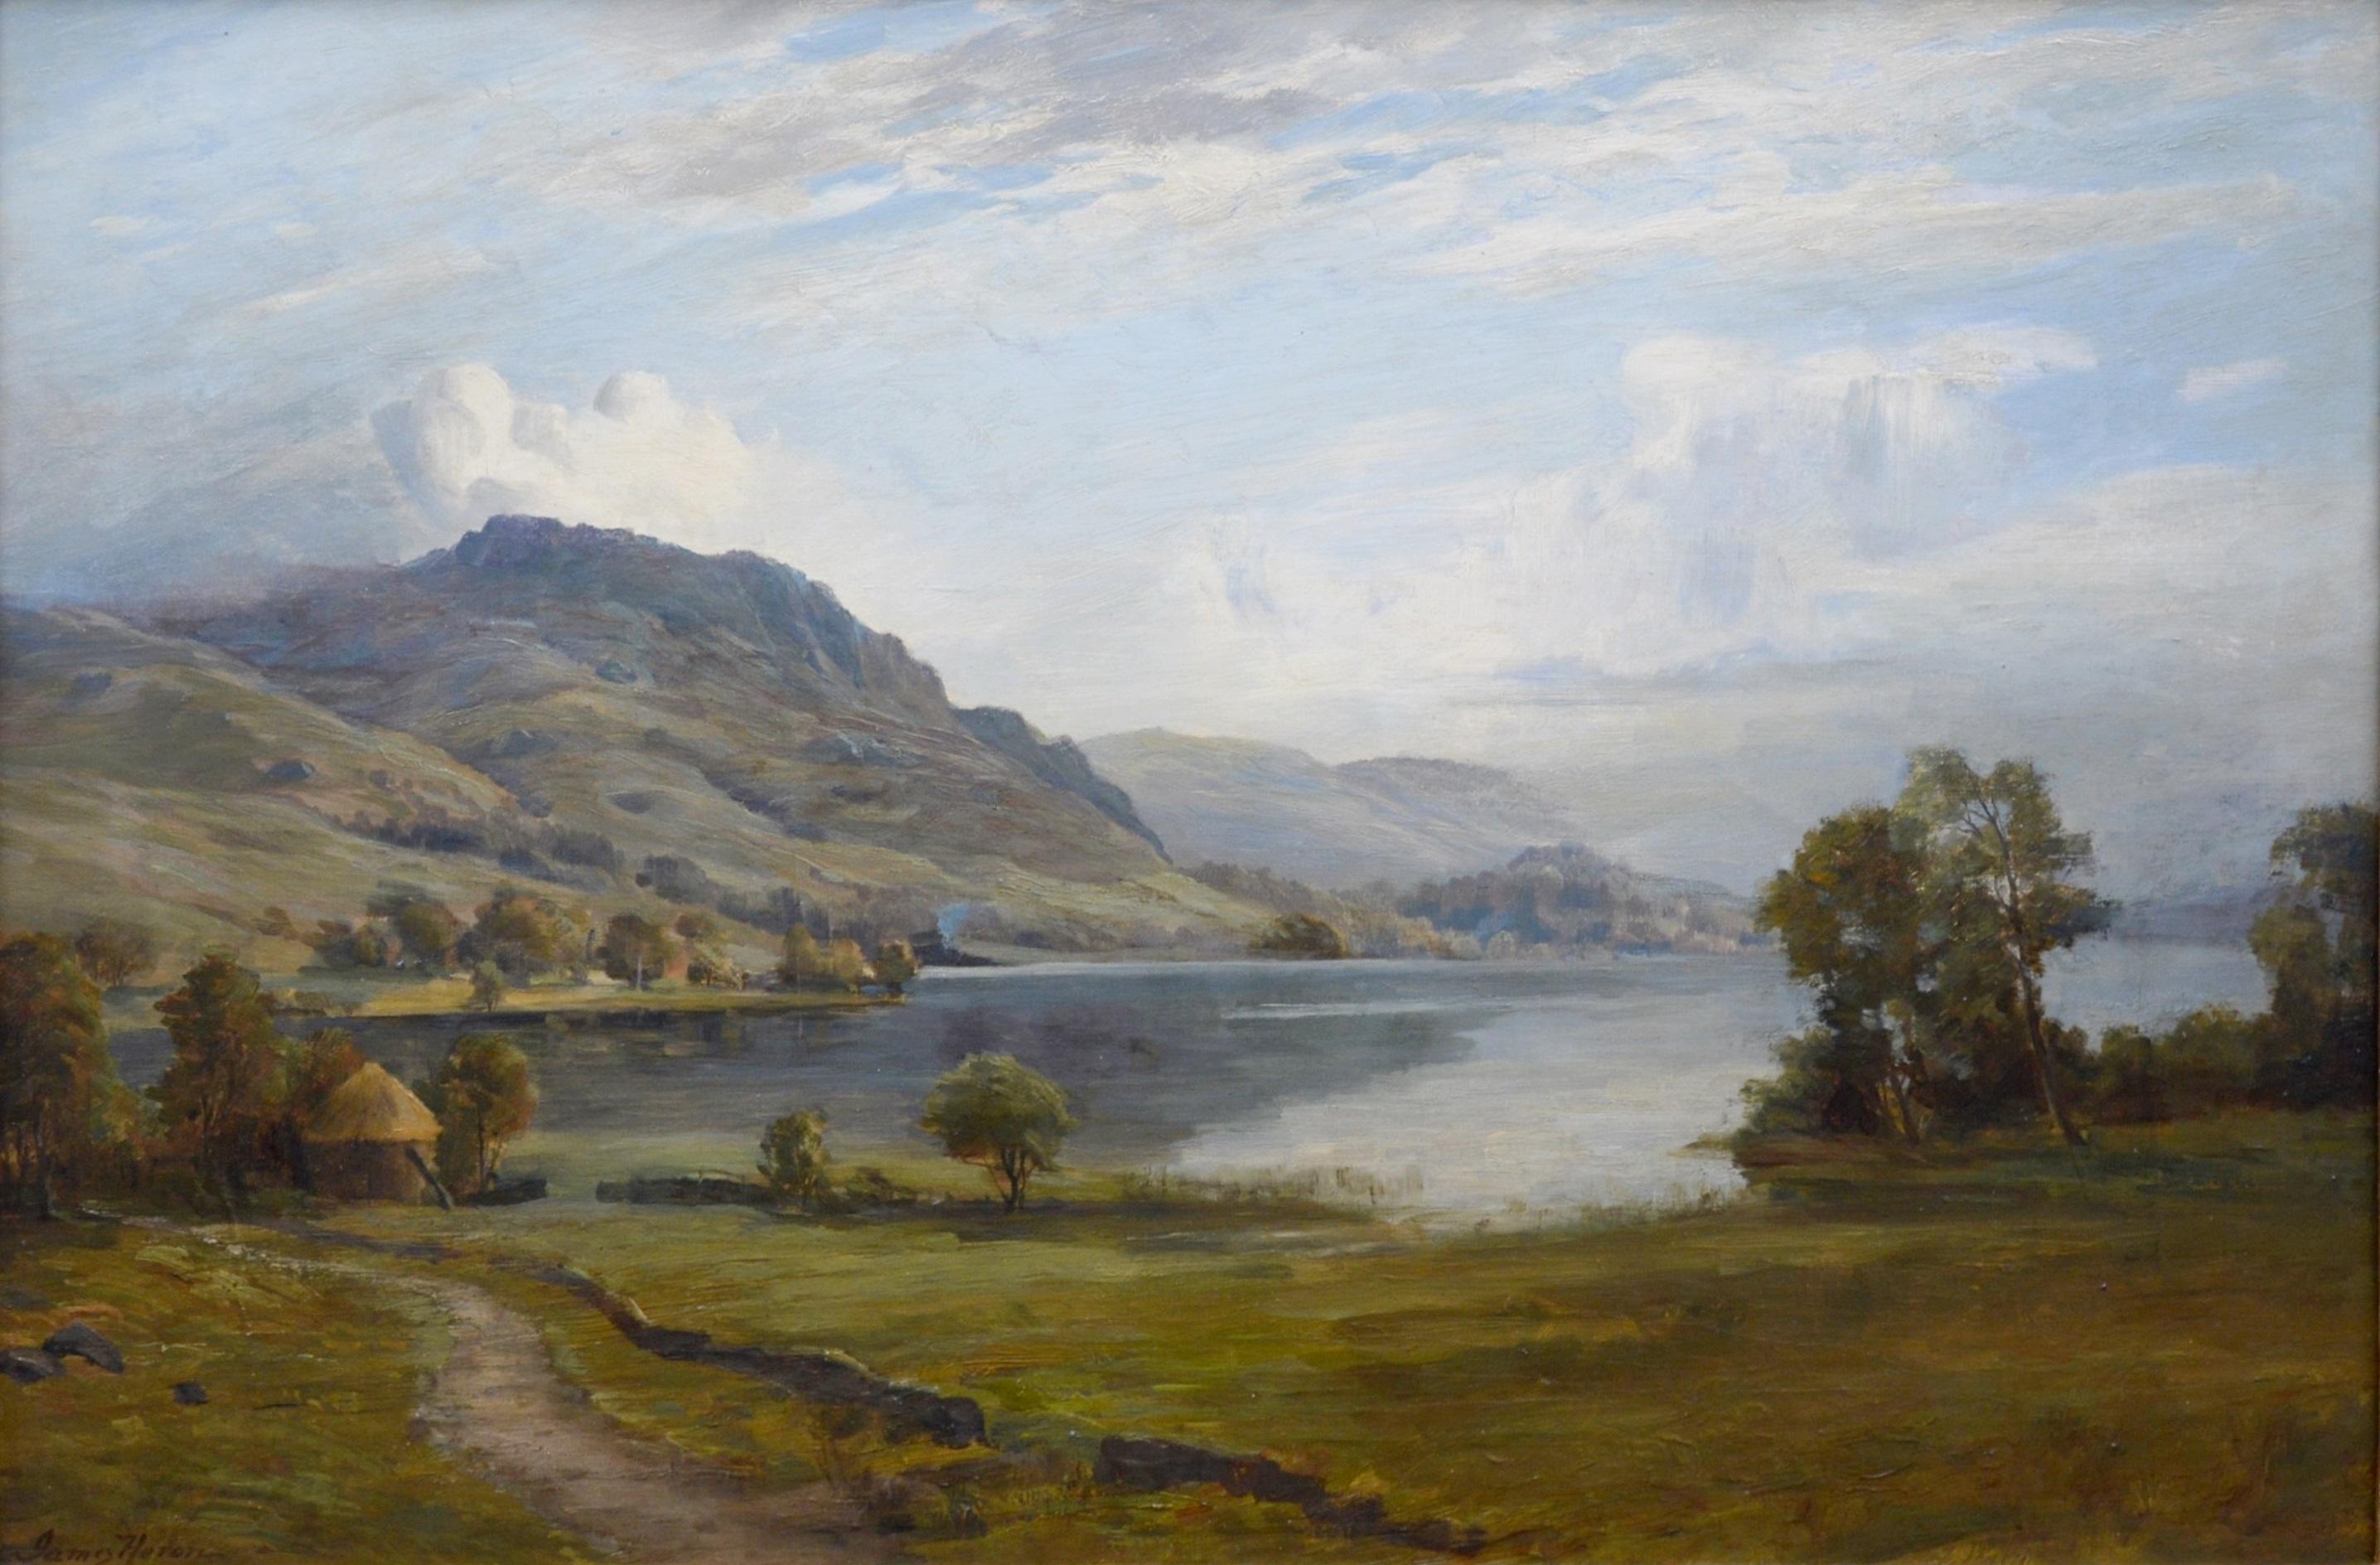 Loch Ard from Aberfoyle - Paysage écossais du 19ème siècle - Peinture à l'huile - Impressionnisme Painting par James Heron